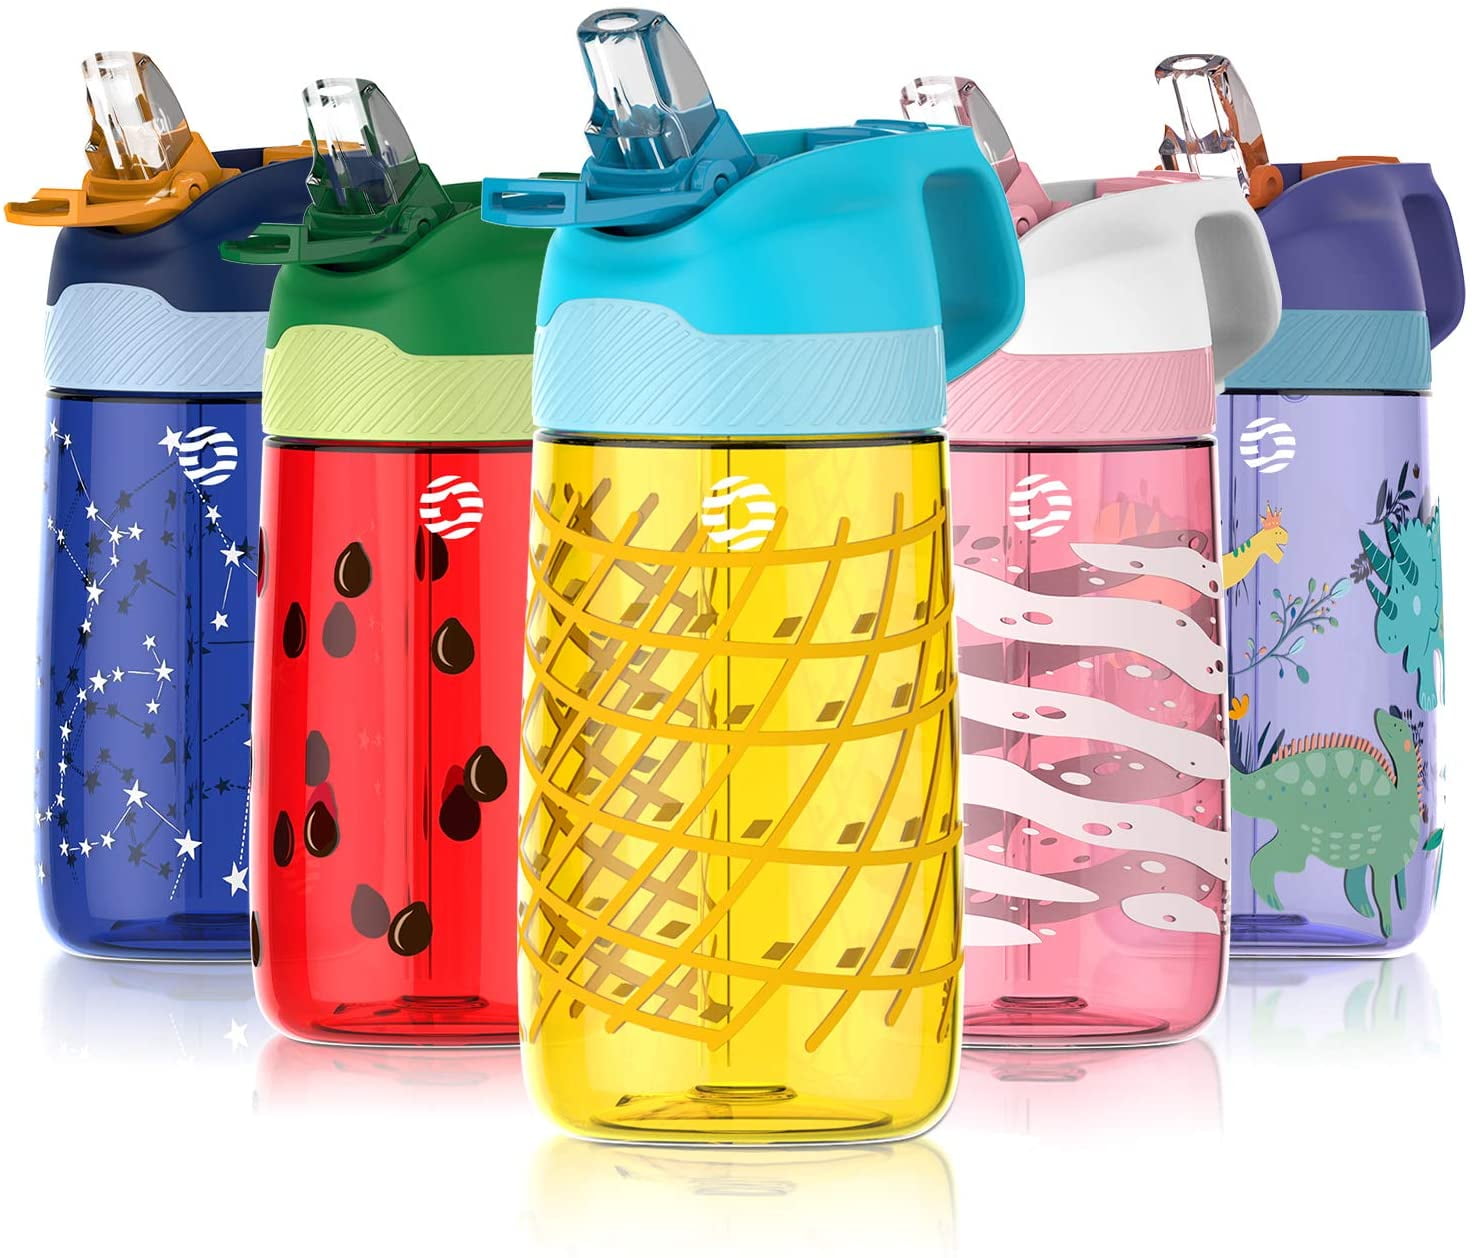 What Size Water Bottle Is Best For School? – FJBottle Official Website